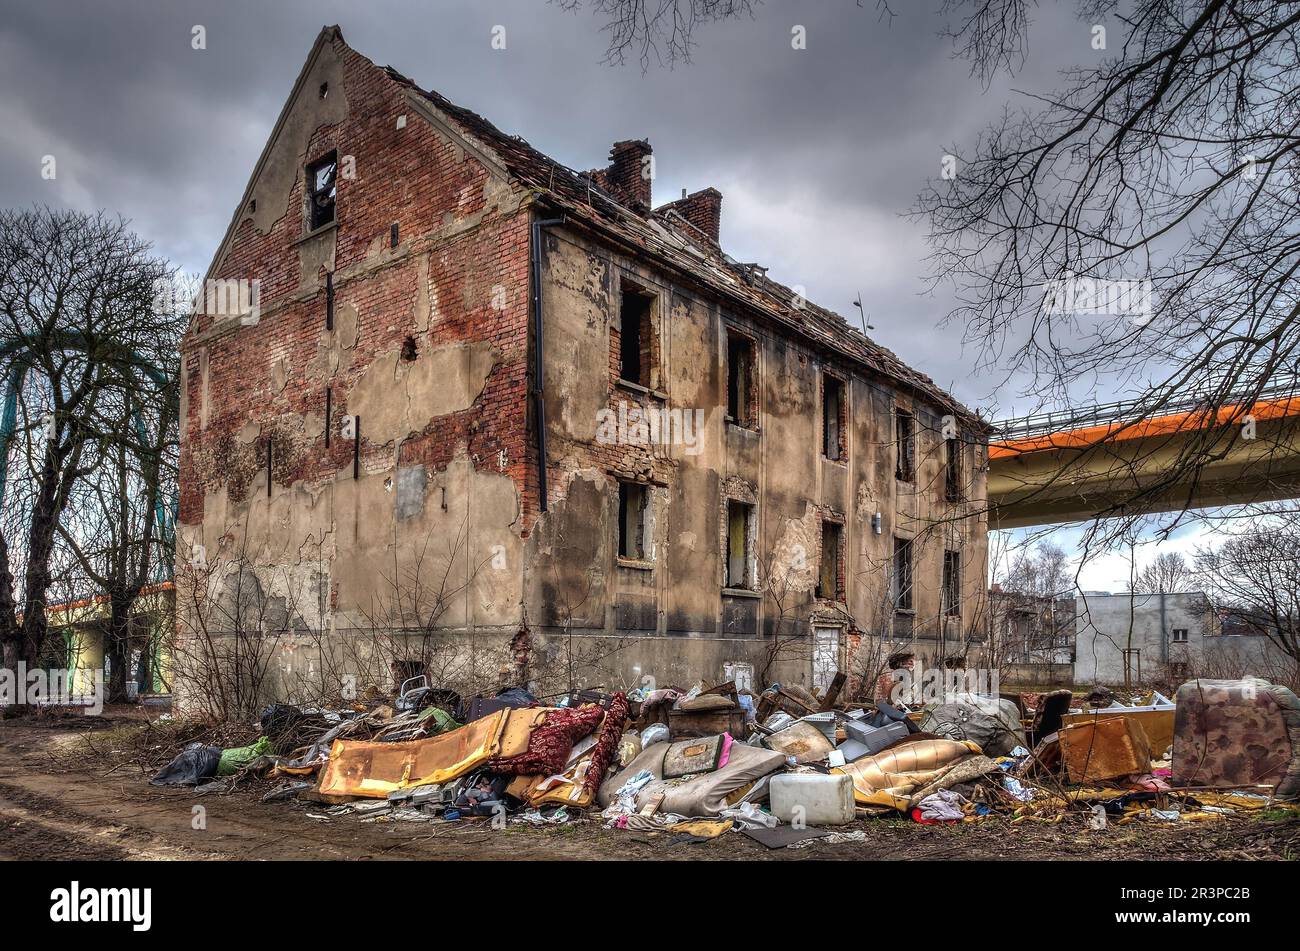 Vecchio edificio in rovina a Bydgoszcz, Polonia. A sinistra crolla casa, l'oggetto che cade in rovina è probabilmente abitato da persone senza tetto. Foto Stock